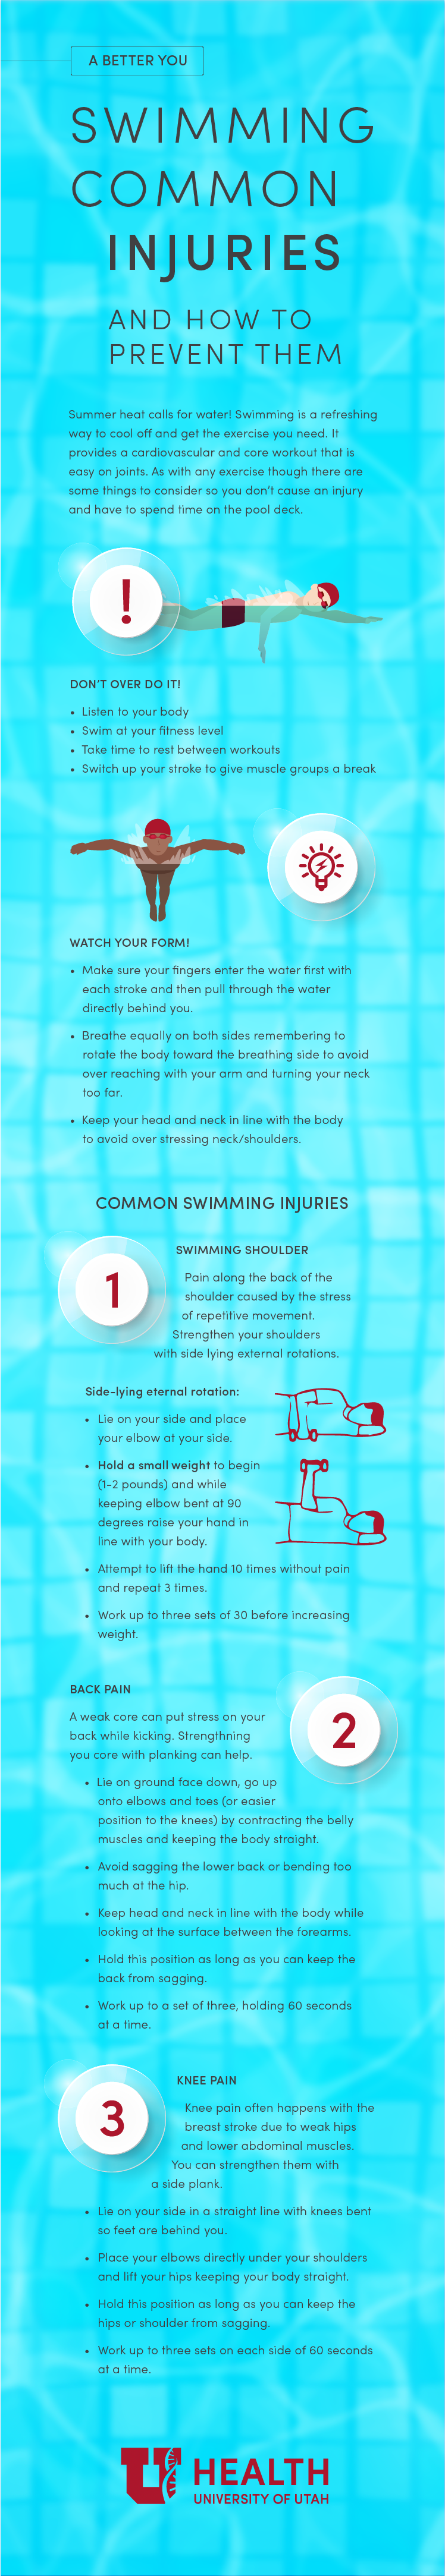 Swimming injuries